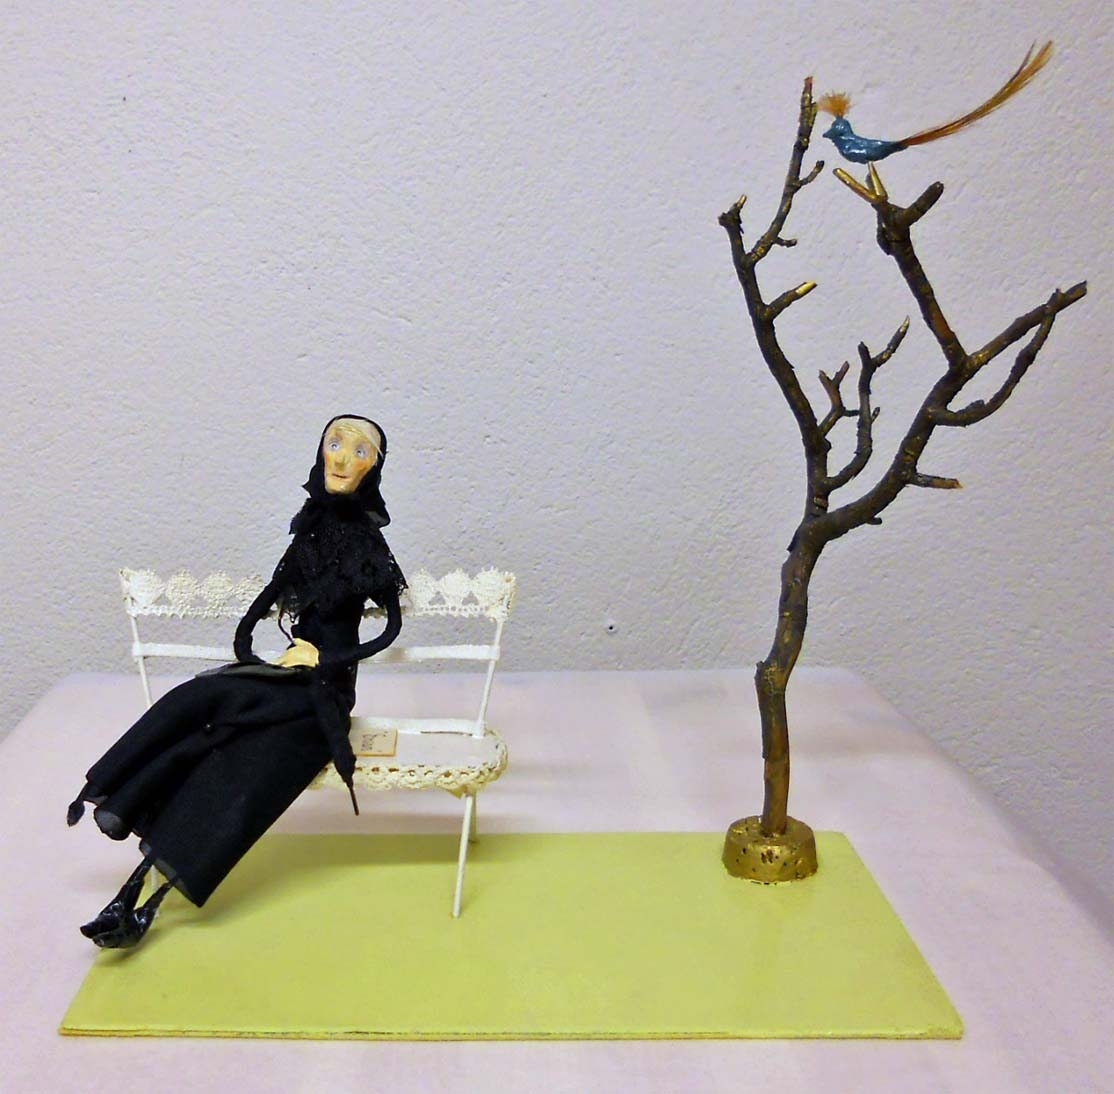 En gammal kvinna klädd i svart sitter på en vit bänk bredvid ett kalt träd. En blå fantasifågel sitter i trädet.